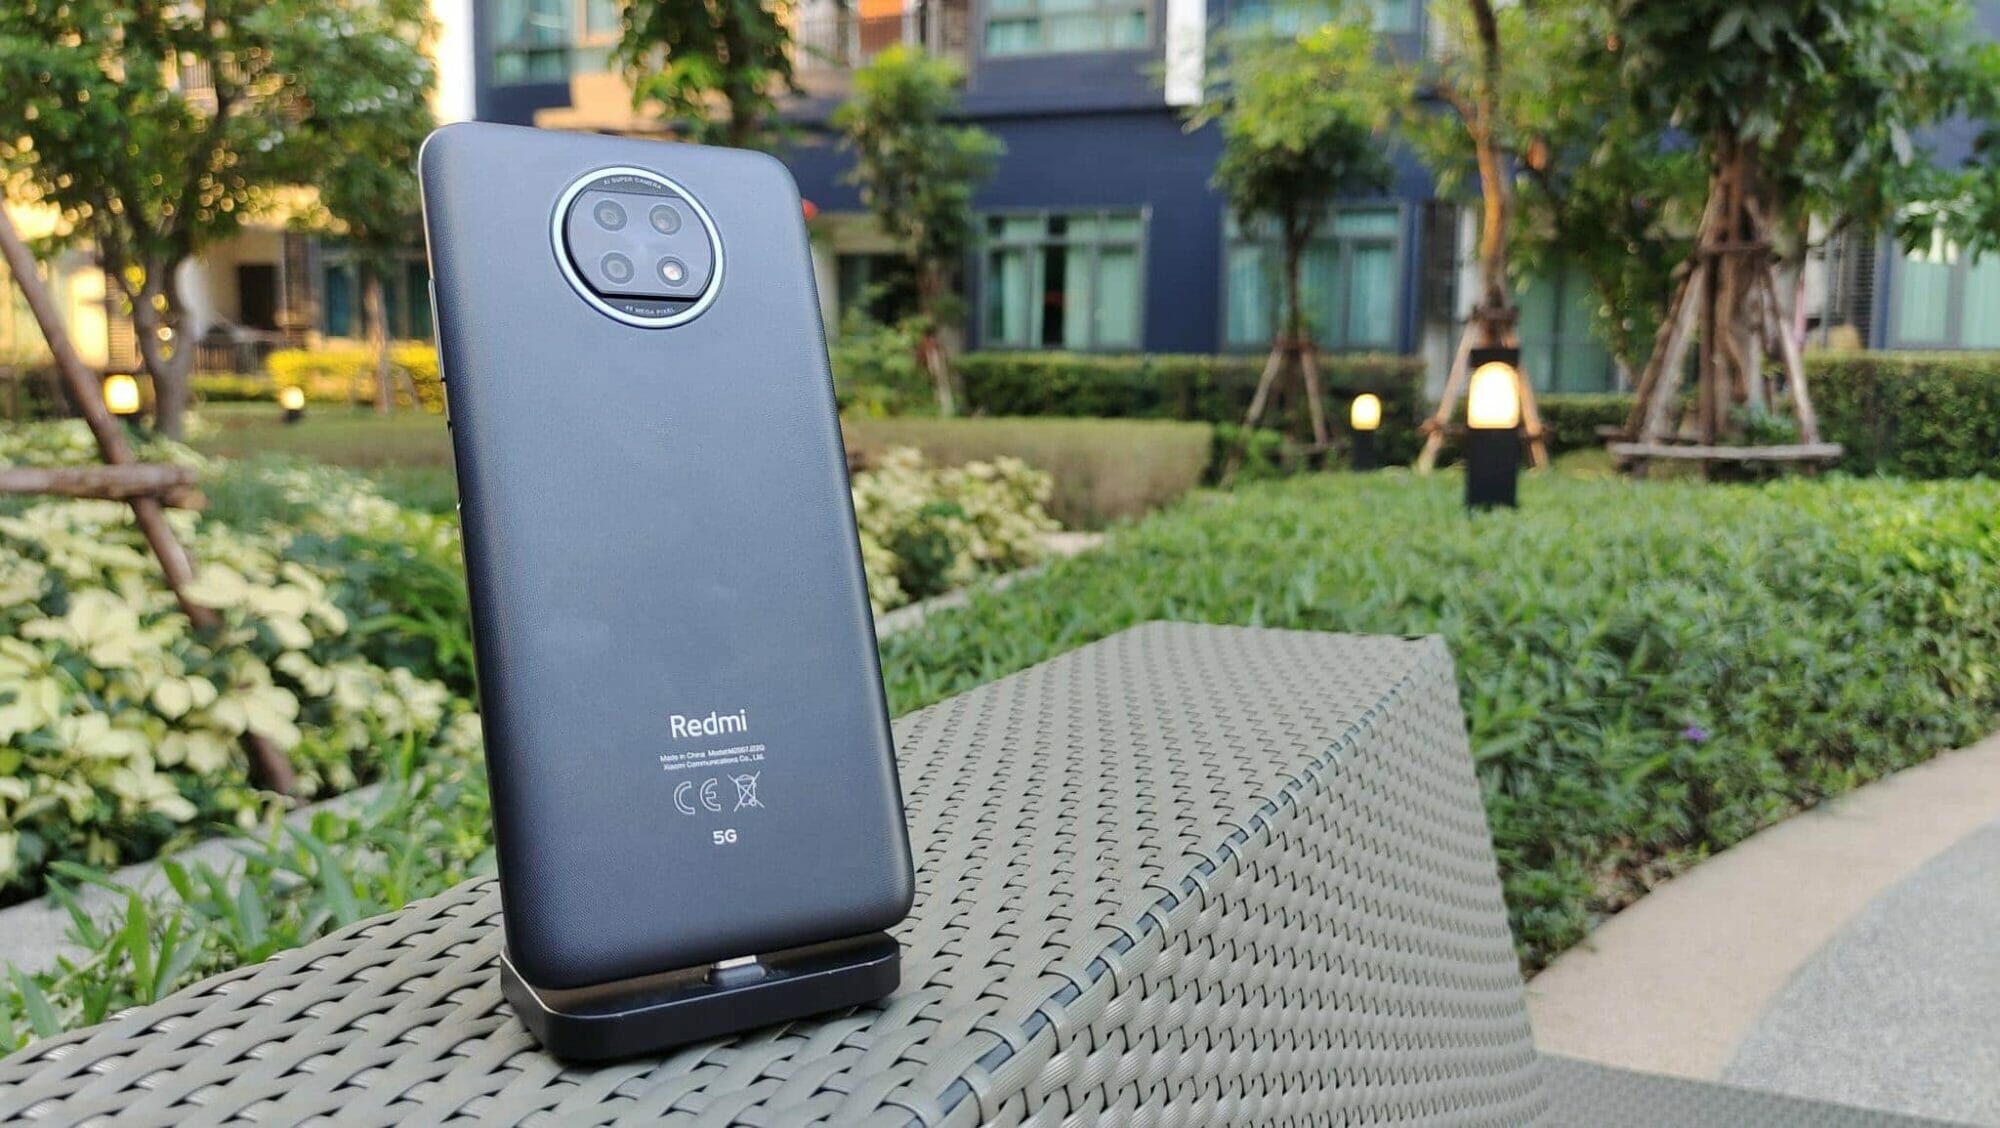 รีวิว Redmi Note 9T สมาร์ทโฟน 5G สองซิมราคาเริ่มต้น 5,999 บาท ได้ลำโพงคู่และแบตเตอรี่ 5,000 mAh พร้อมระบบชาร์จเร็วด้วย! 5